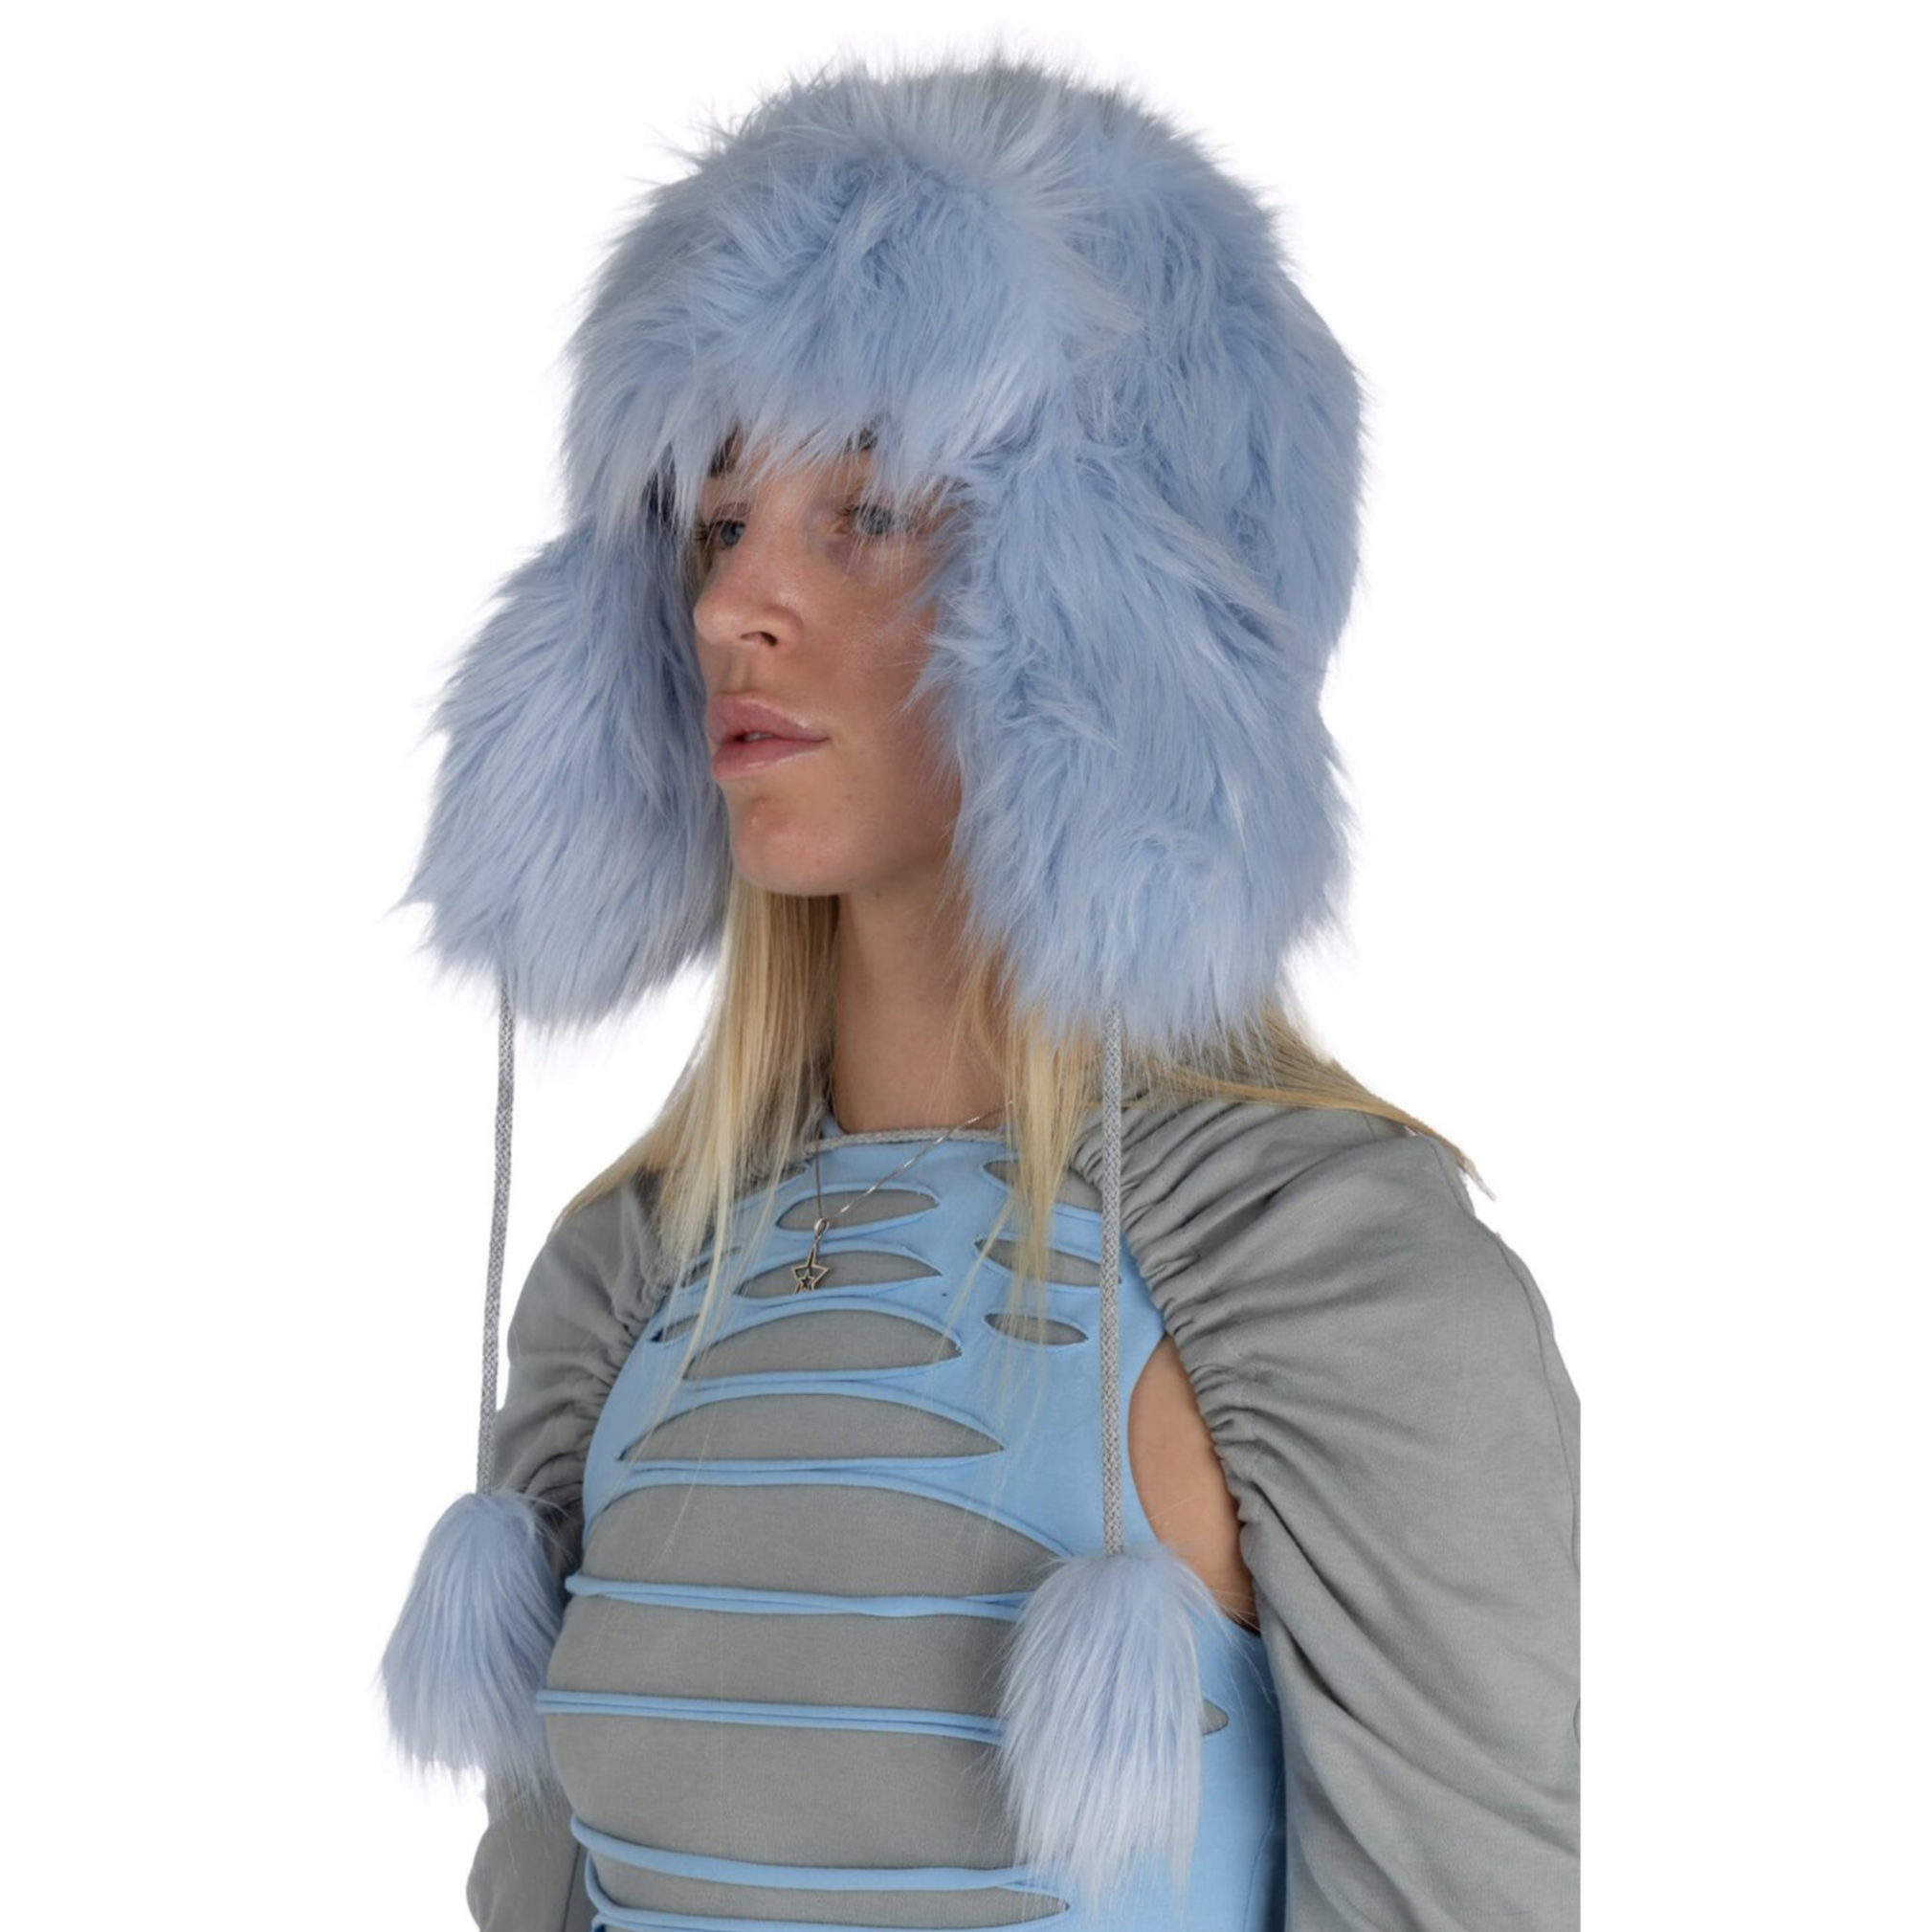 Too Cozy Trapper Fur Hat - Powder Blue